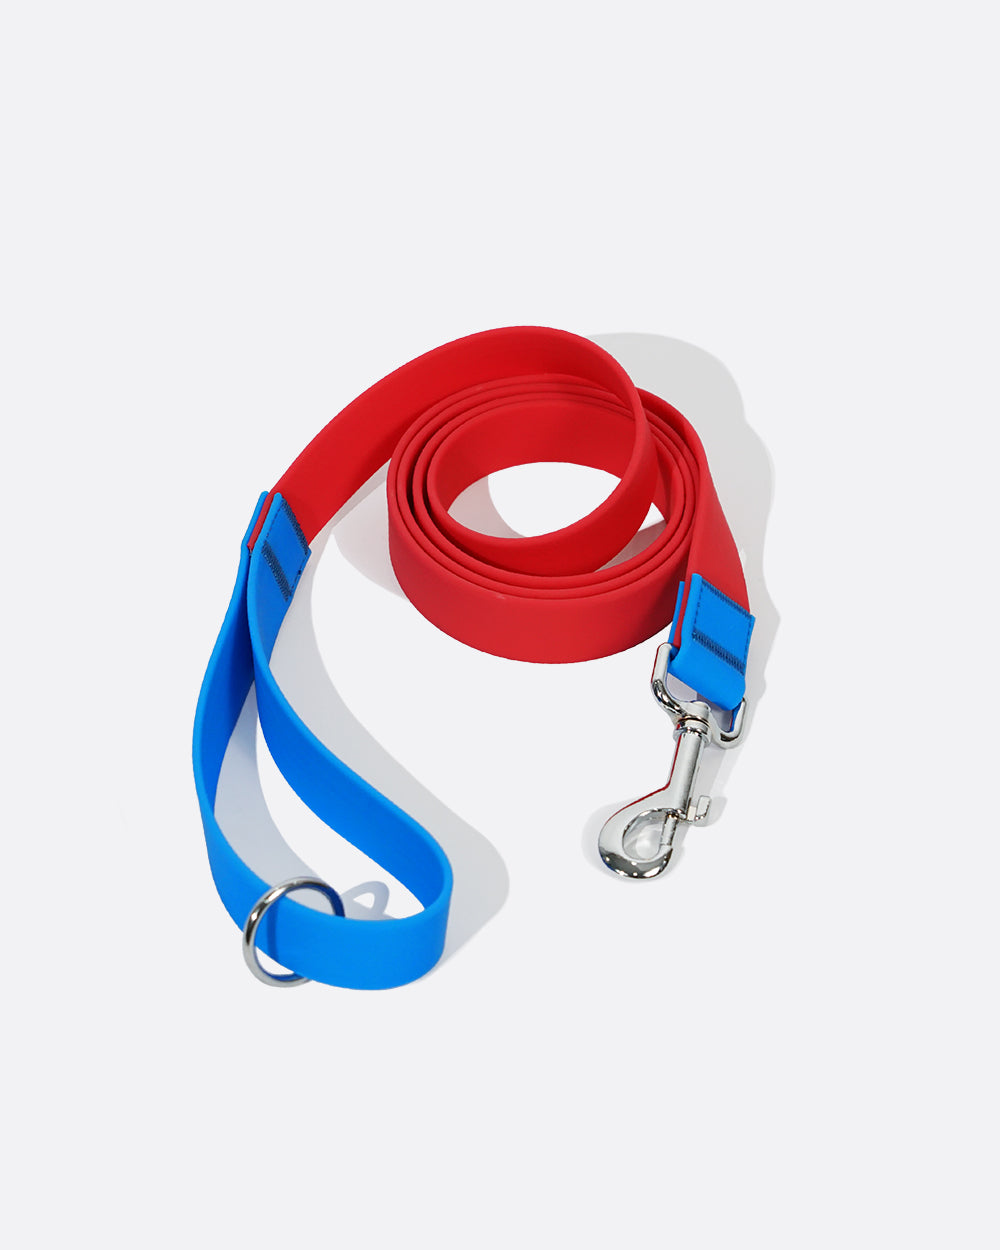 Aqua PVC 防水 Martingale 項圈和皮帶套裝 - Hero Red